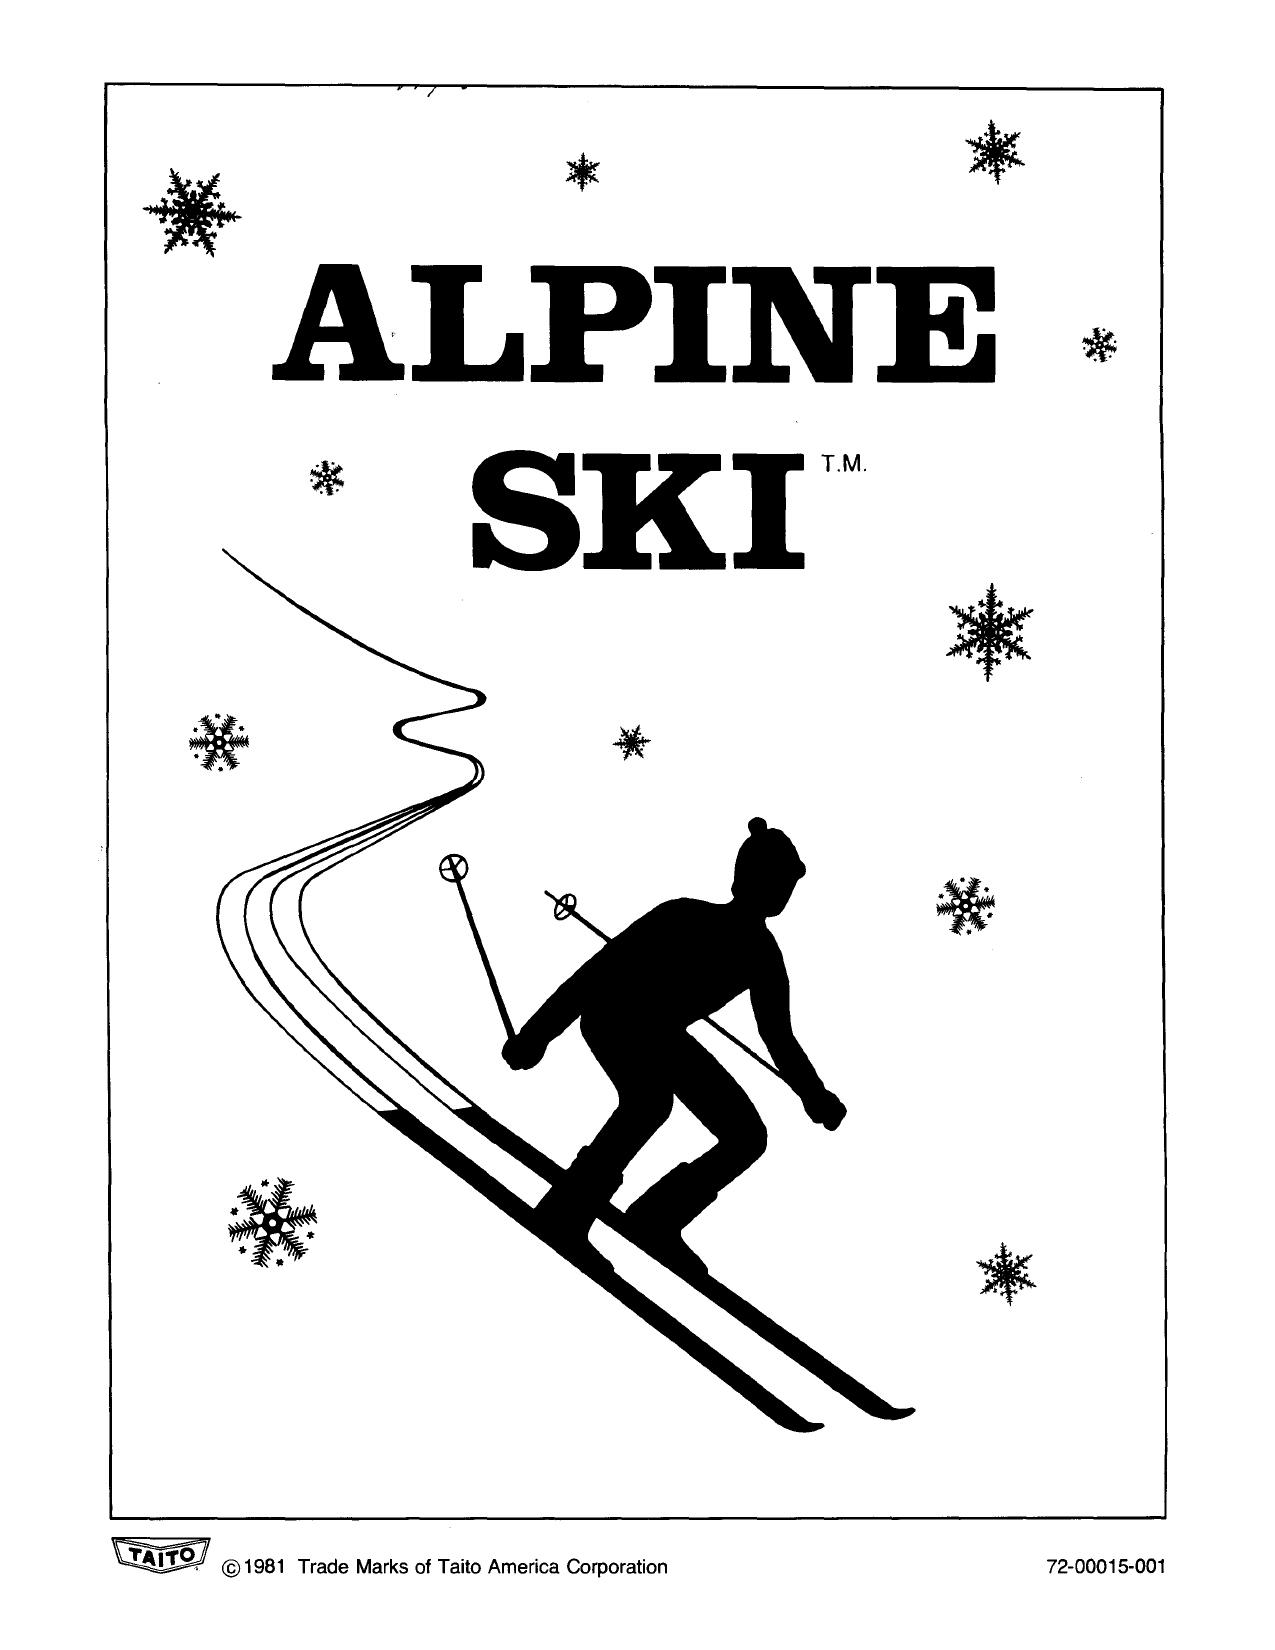 AlpineSki Manual